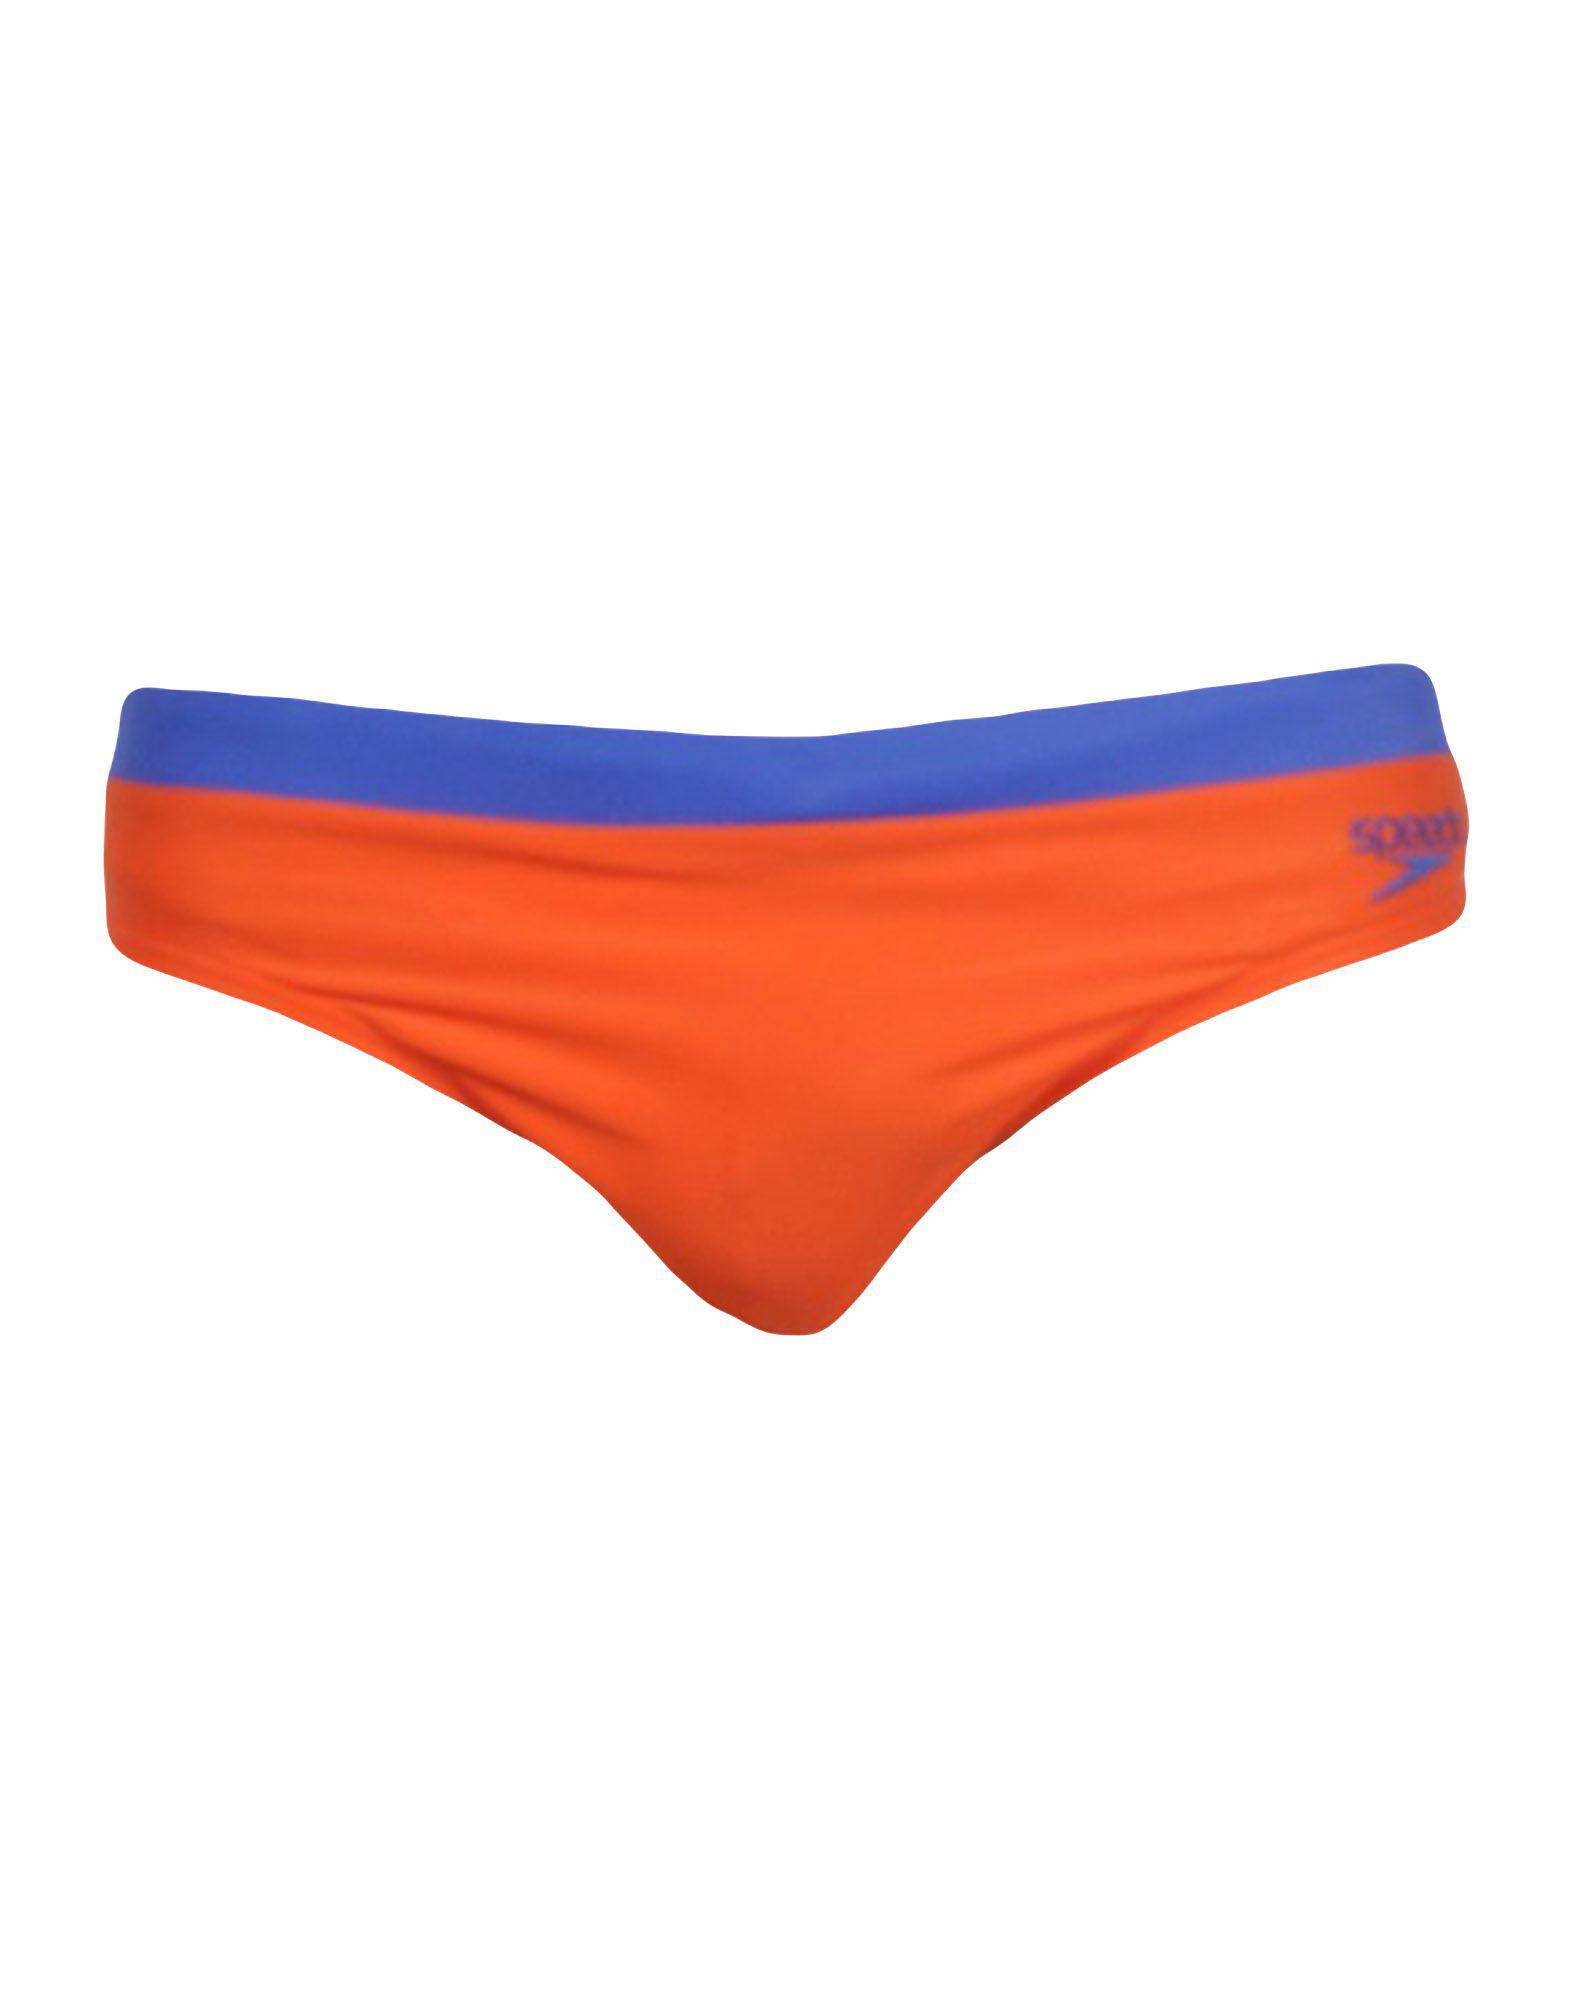 Lyst - Speedo Swim Brief in Orange for Men